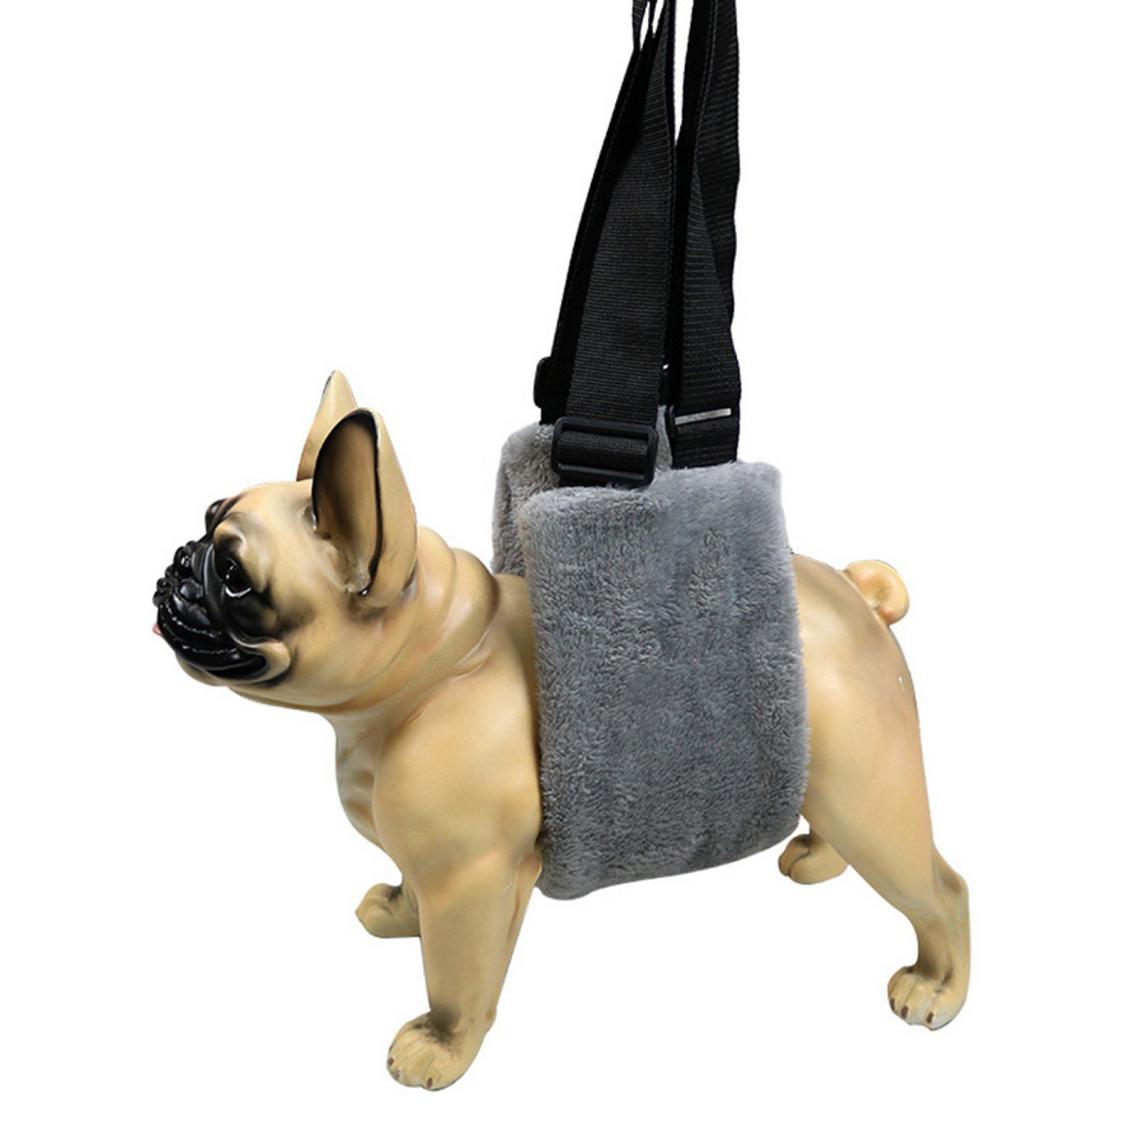 Justgreenbox - Harnais de soutien pour chien de compagnie - Confortable pour les blessures articulaires Chiens âgés, Gris, XL - Equipement de transport pour chien